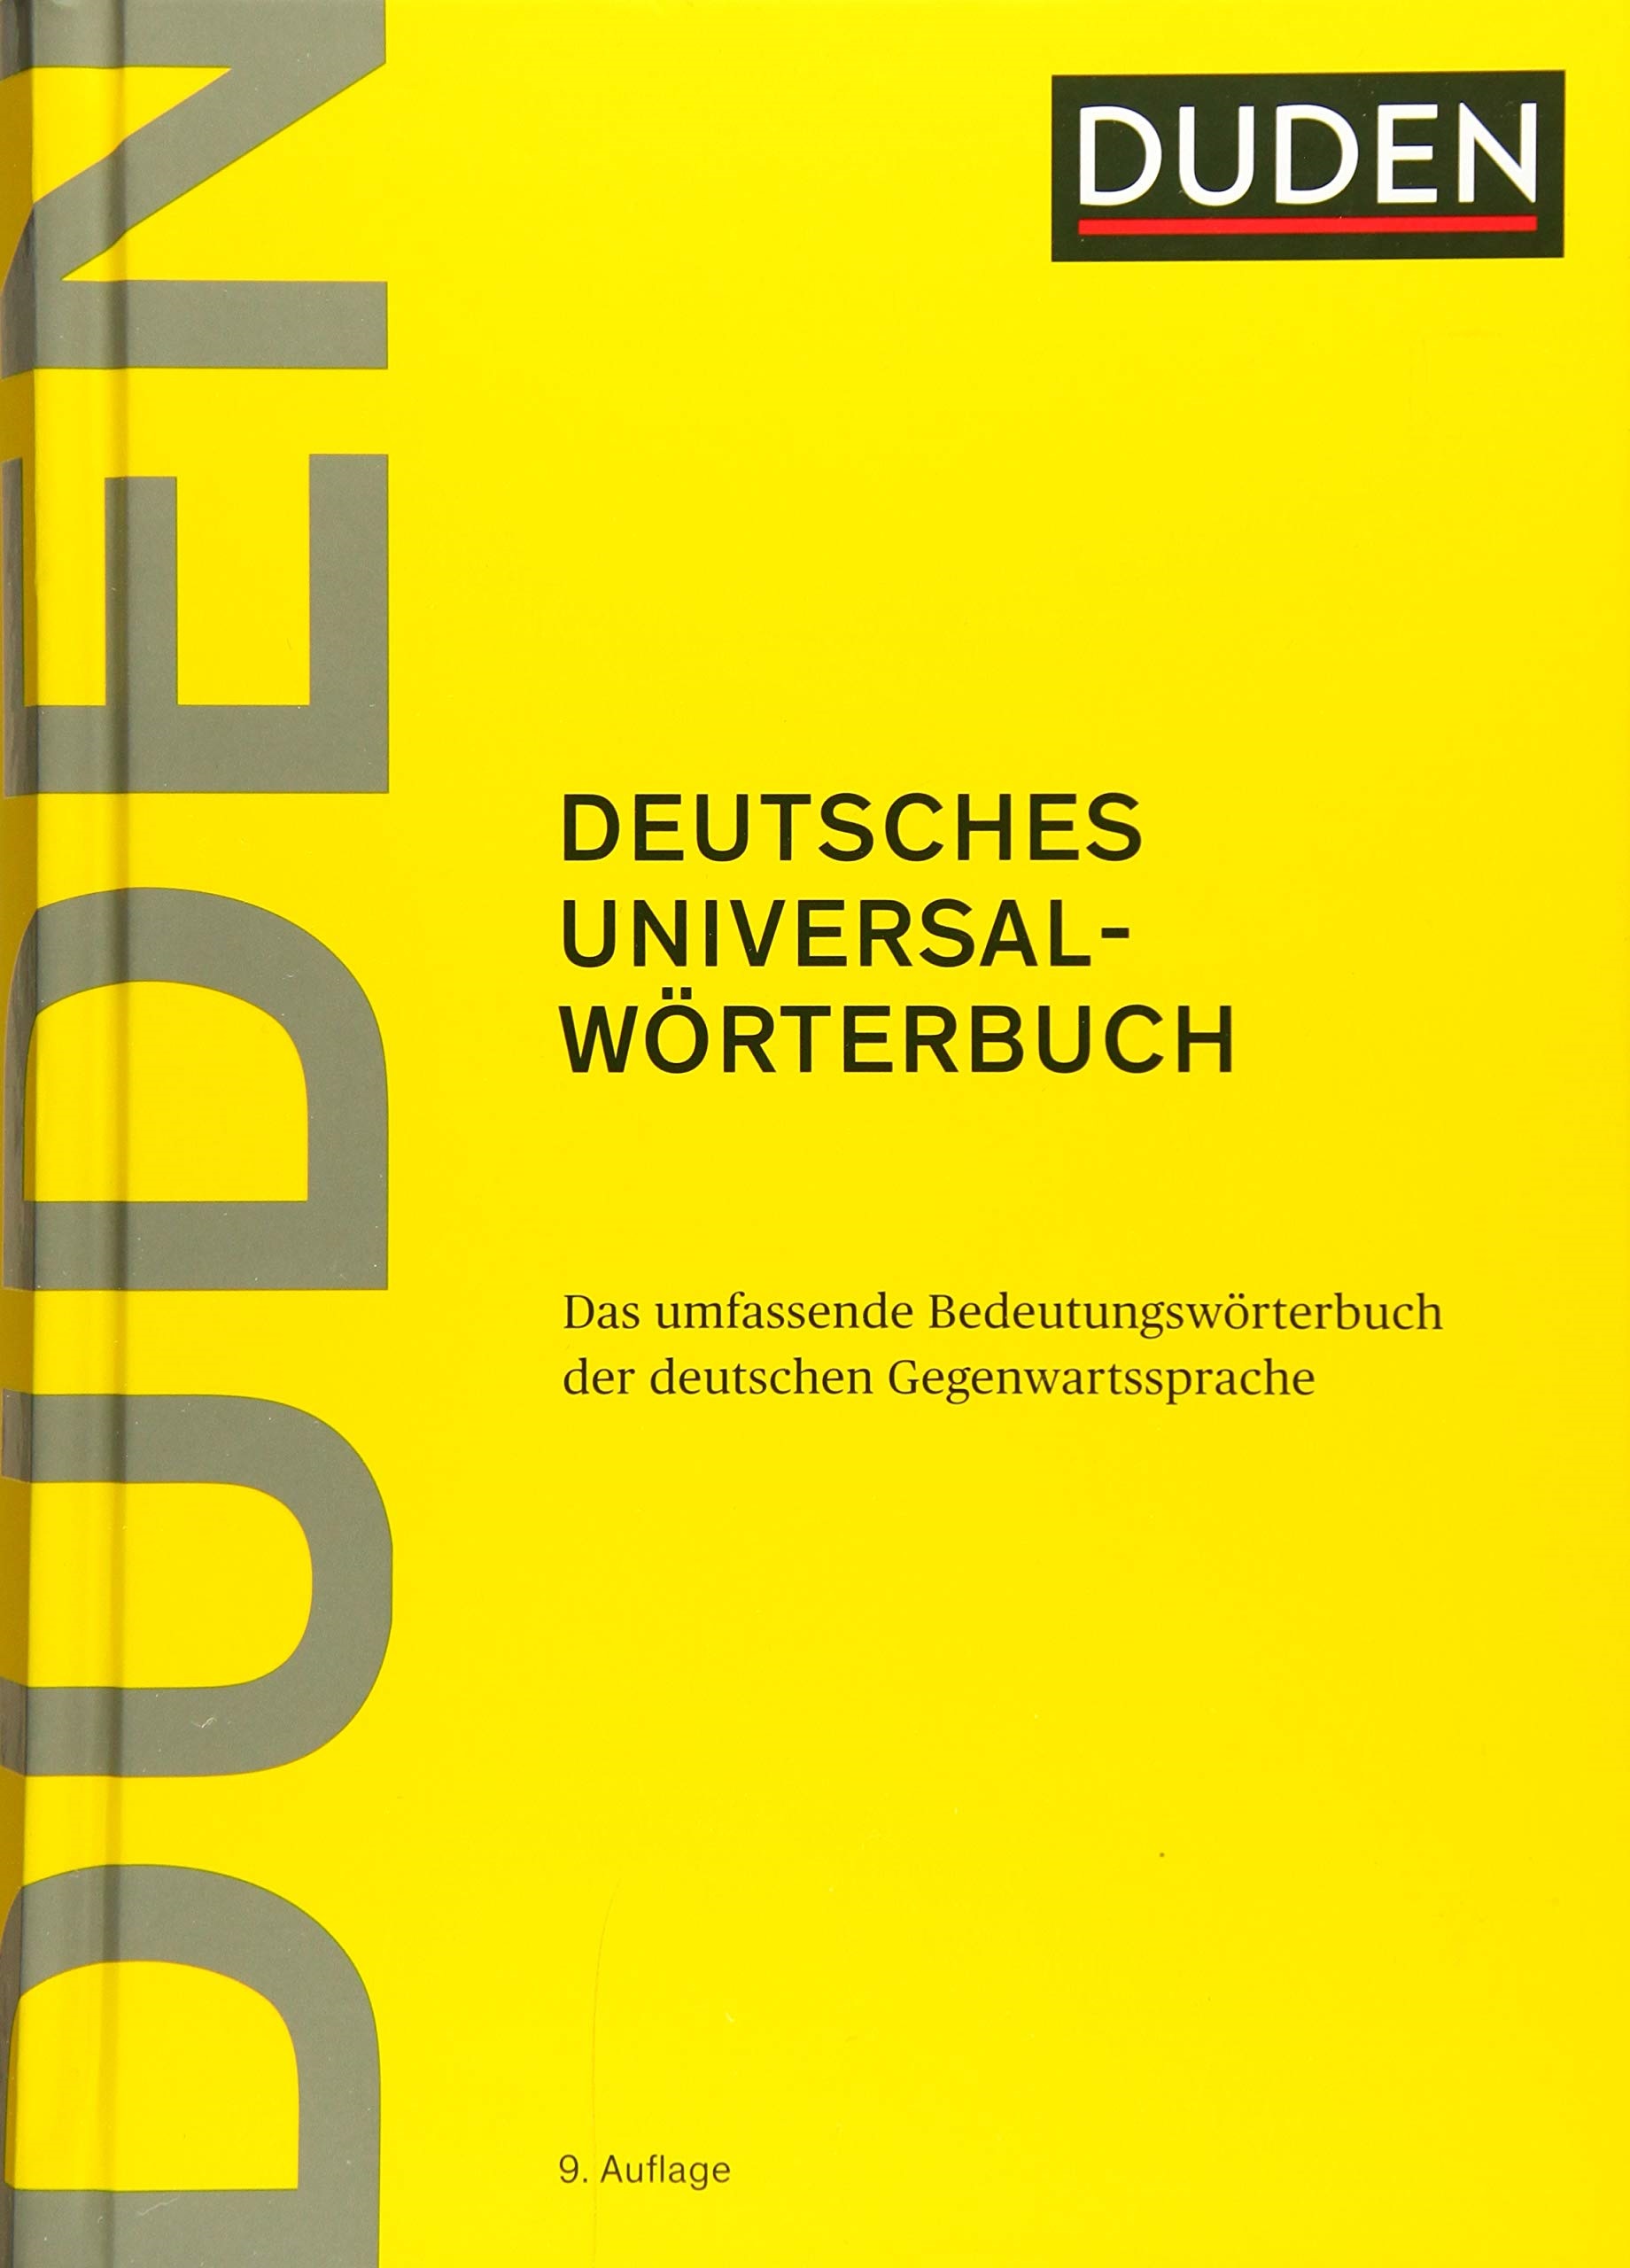 Duden. Deutsches Universalworterbuch (9 Auflage) Hardcover / Универсальный словарь немецкого языка (твердая обложка)